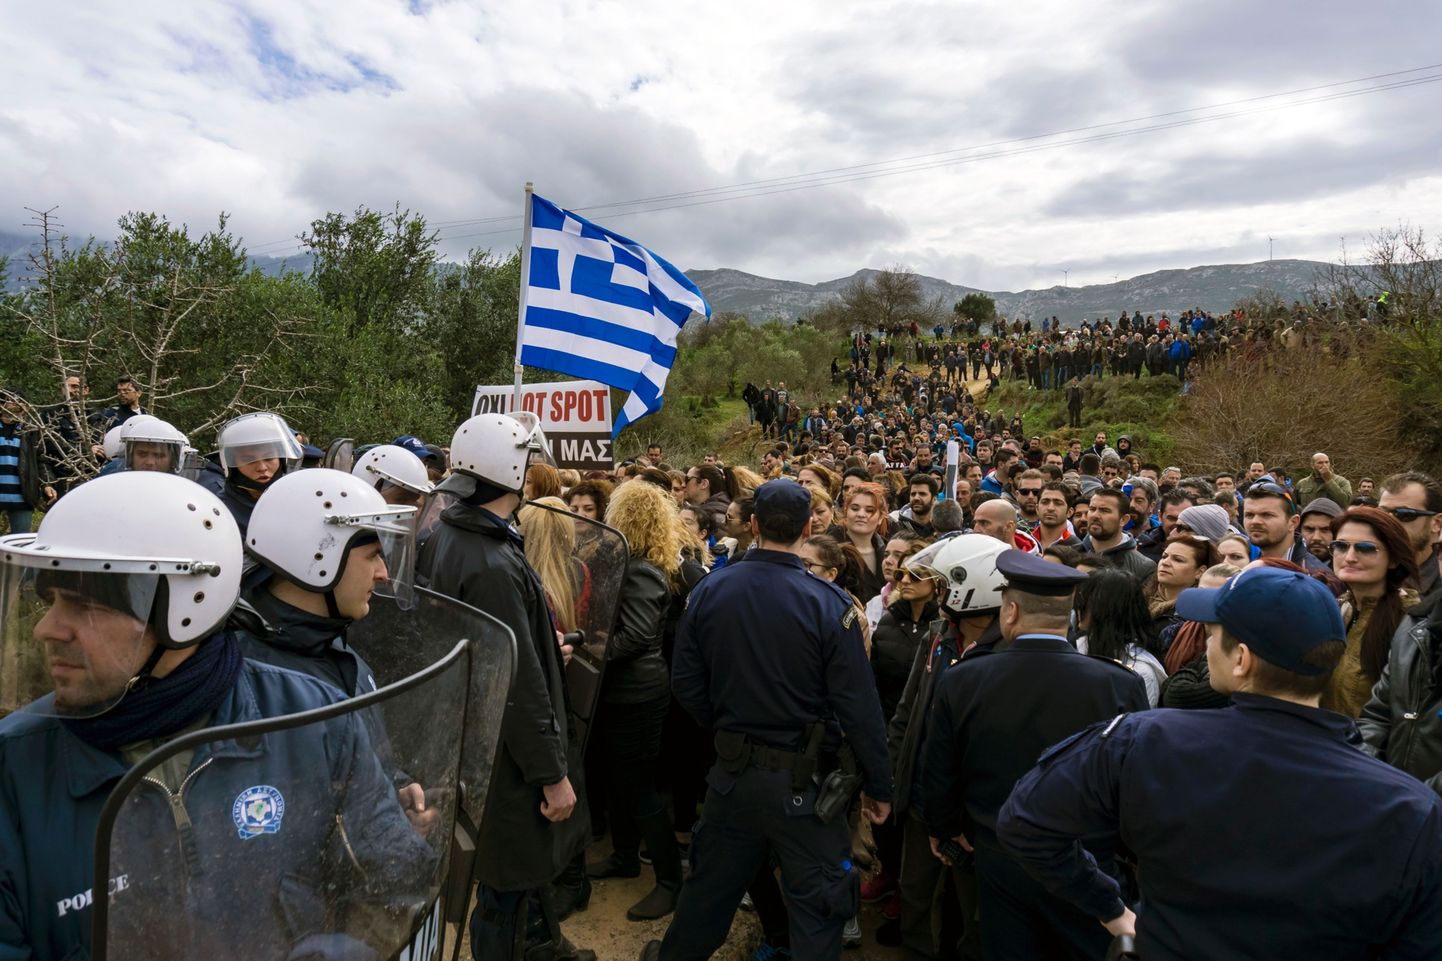 Kreeka saarel protesteerisid tuhanded pagulaskeskuse ehitamise vastu